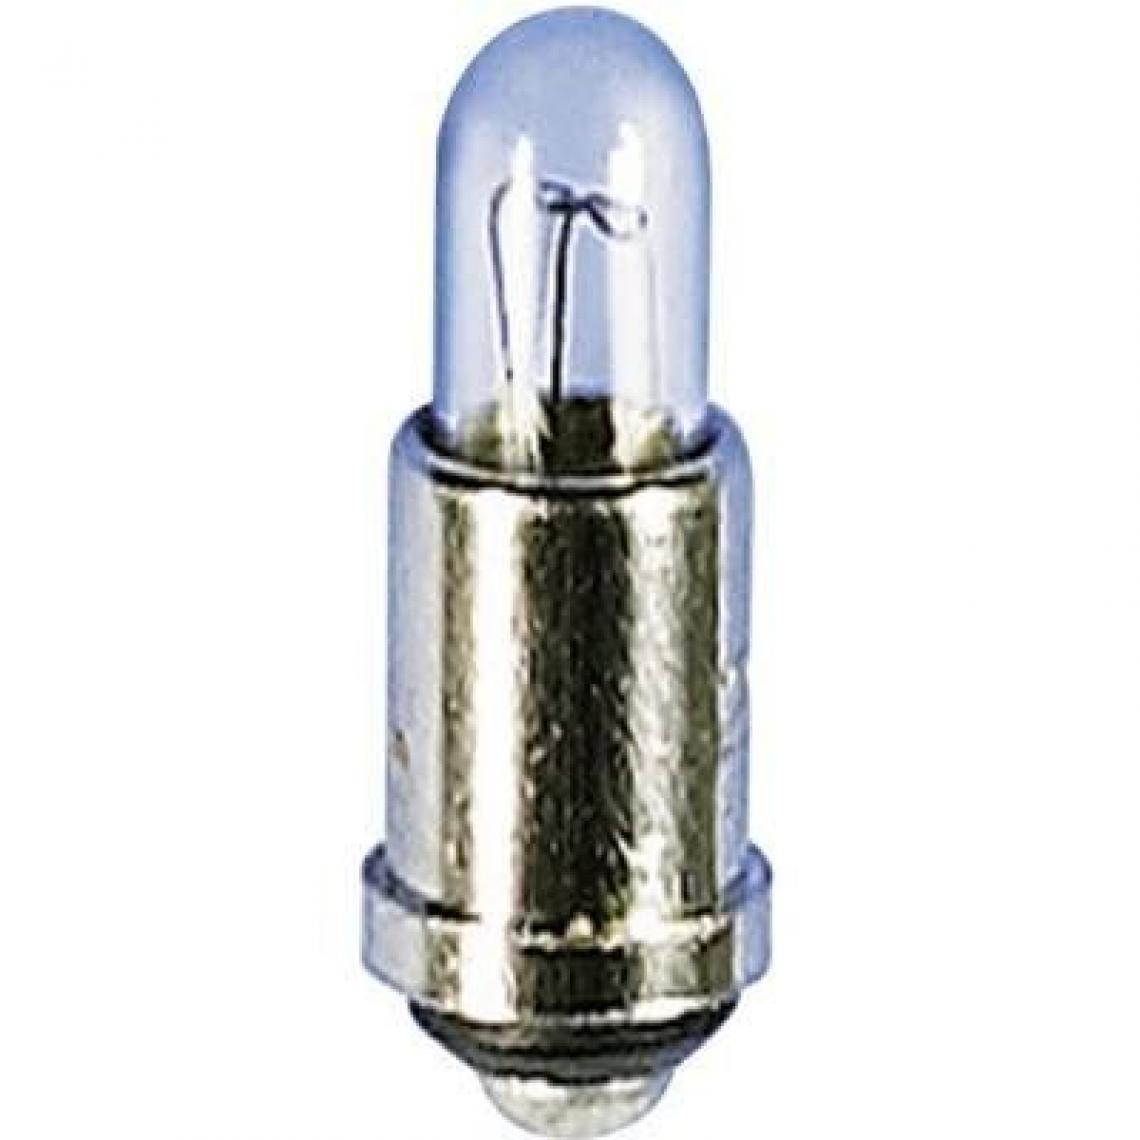 Inconnu - Ampoule incandescente subminiature TRU COMPONENTS 1590381 28 V 1.24 W SM4s/7 clair 1 pc(s) - Ampoules LED